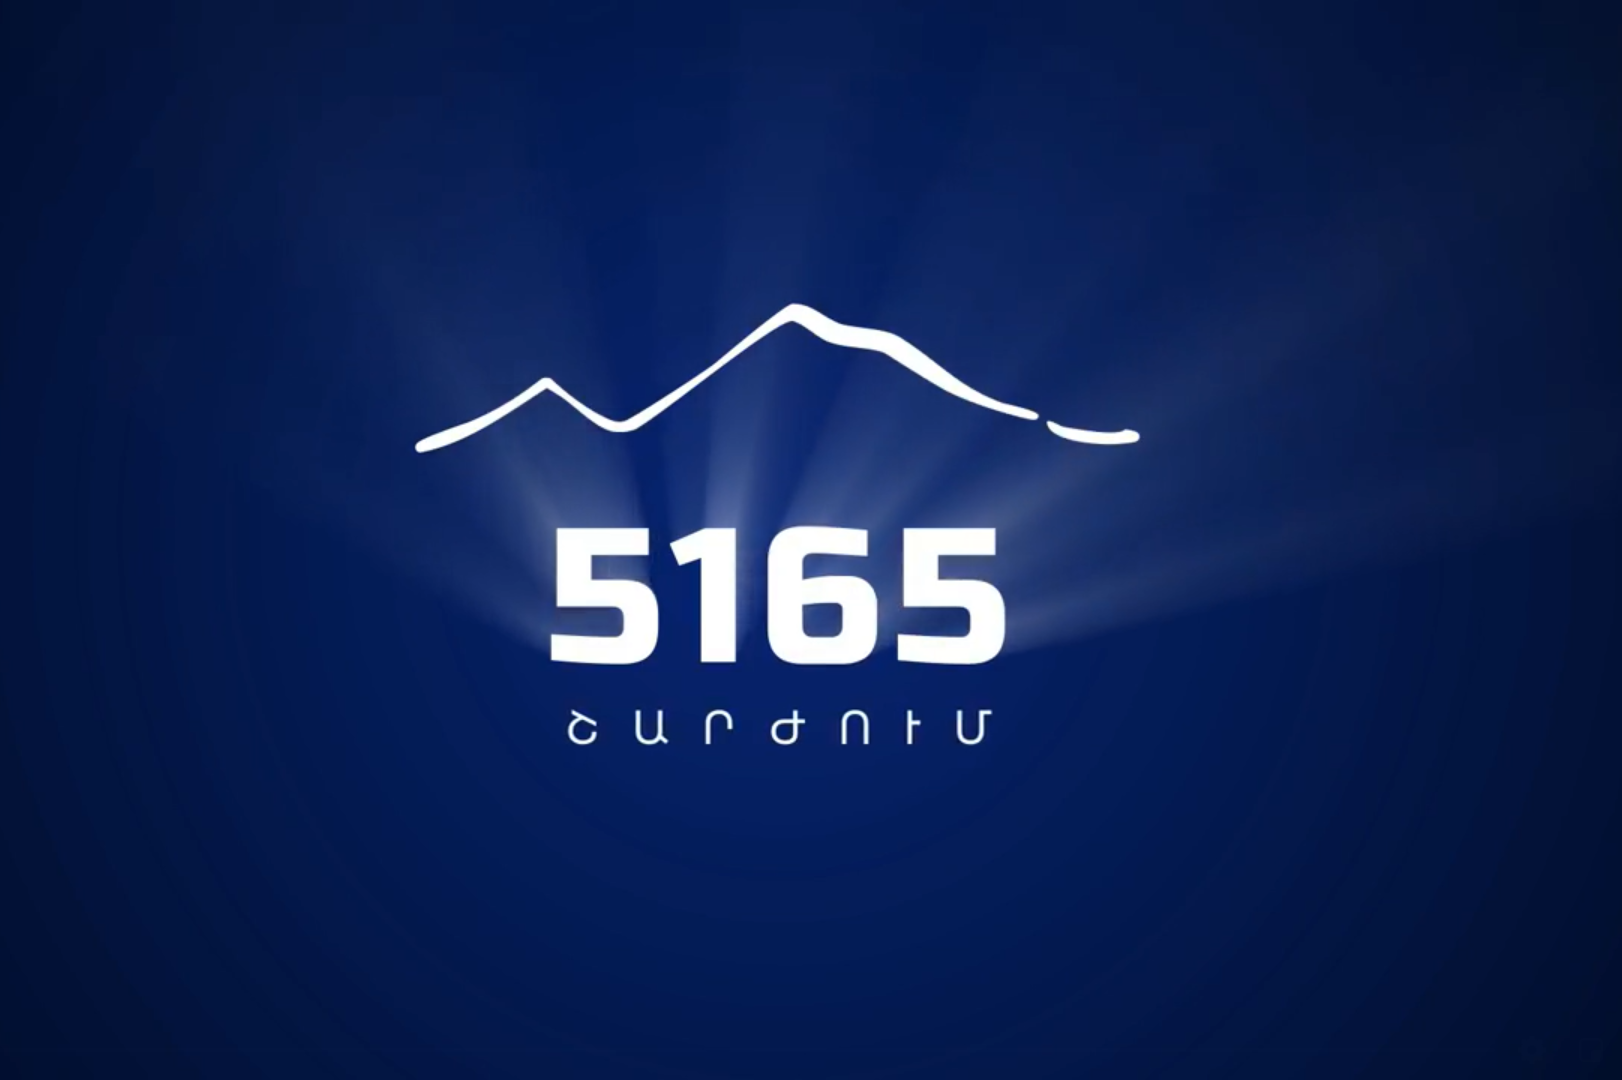 Արցախը երբեք չի կարող լինել Ադրբեջանի մաս․ 5165 շարժում